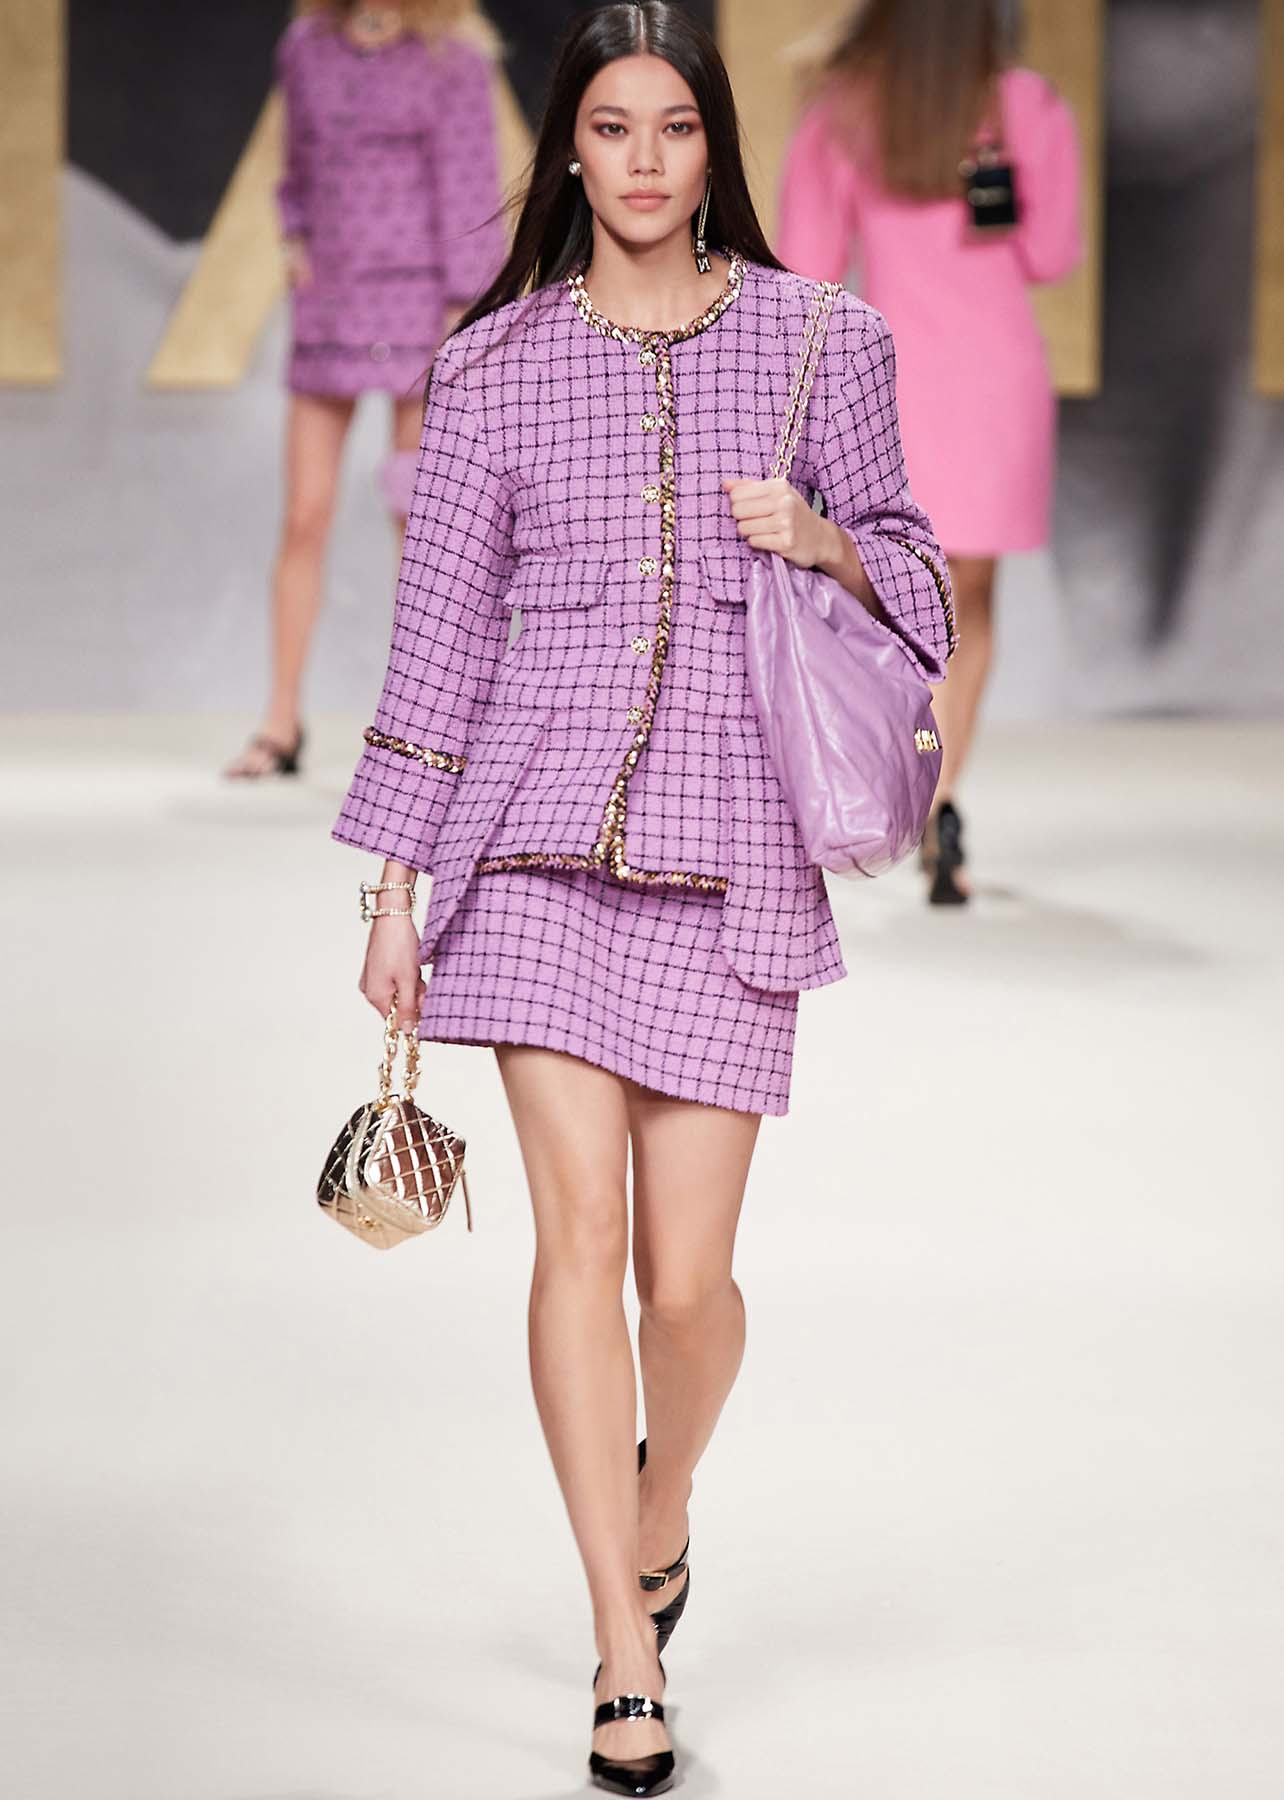 Model walking a runway in a purple tweed jacket and skirt